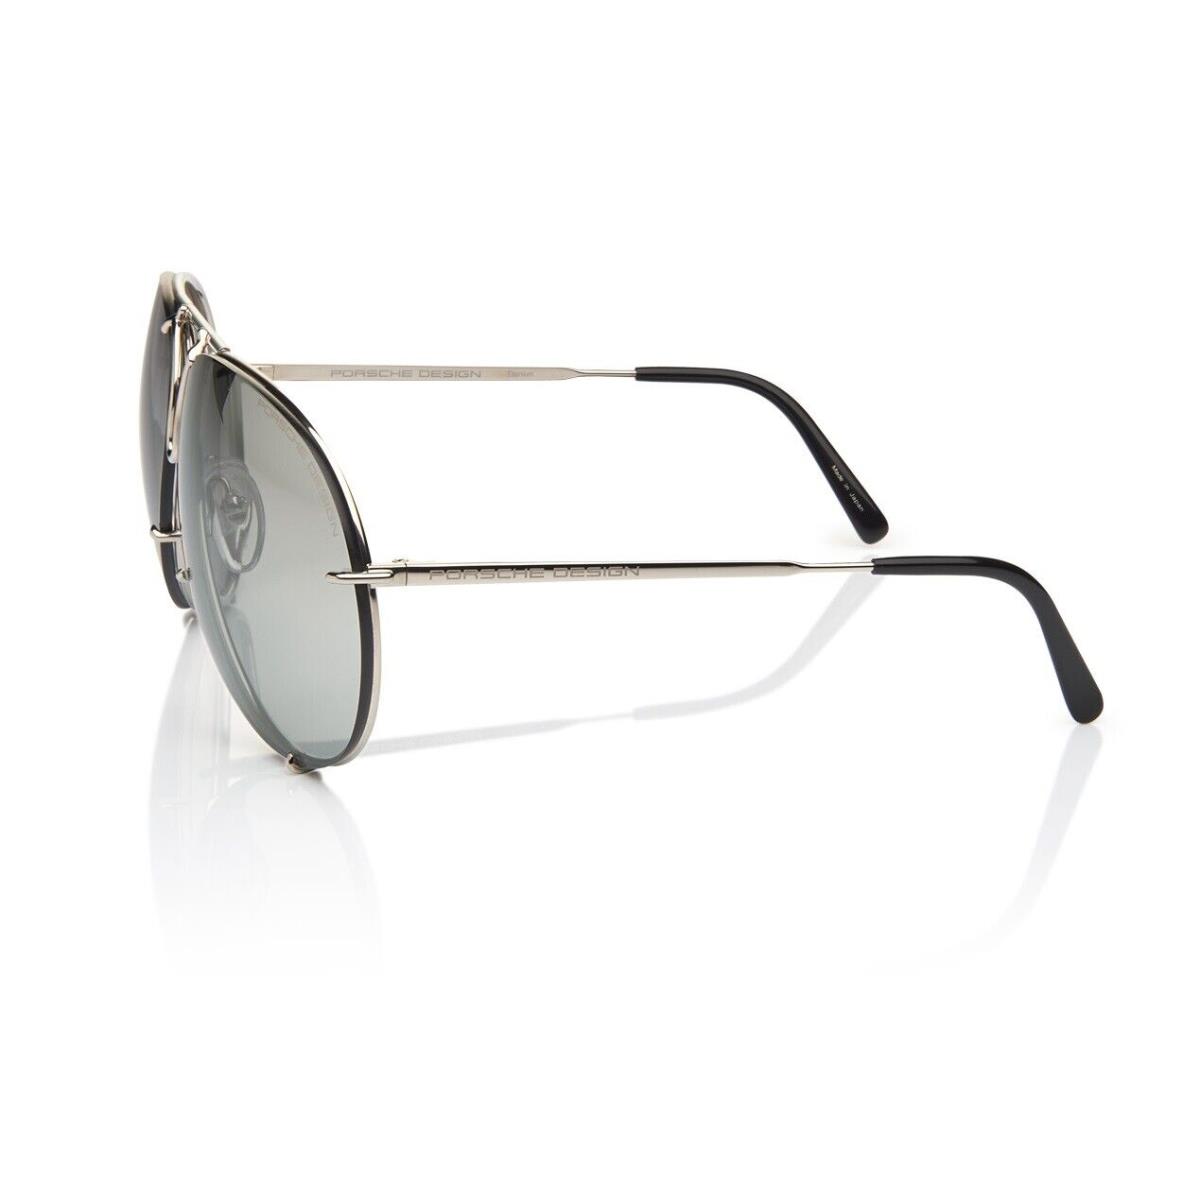 Porsche Design P8478 Iconic Sunglasses B - Titanium/grey Gradient + Extra Lenses